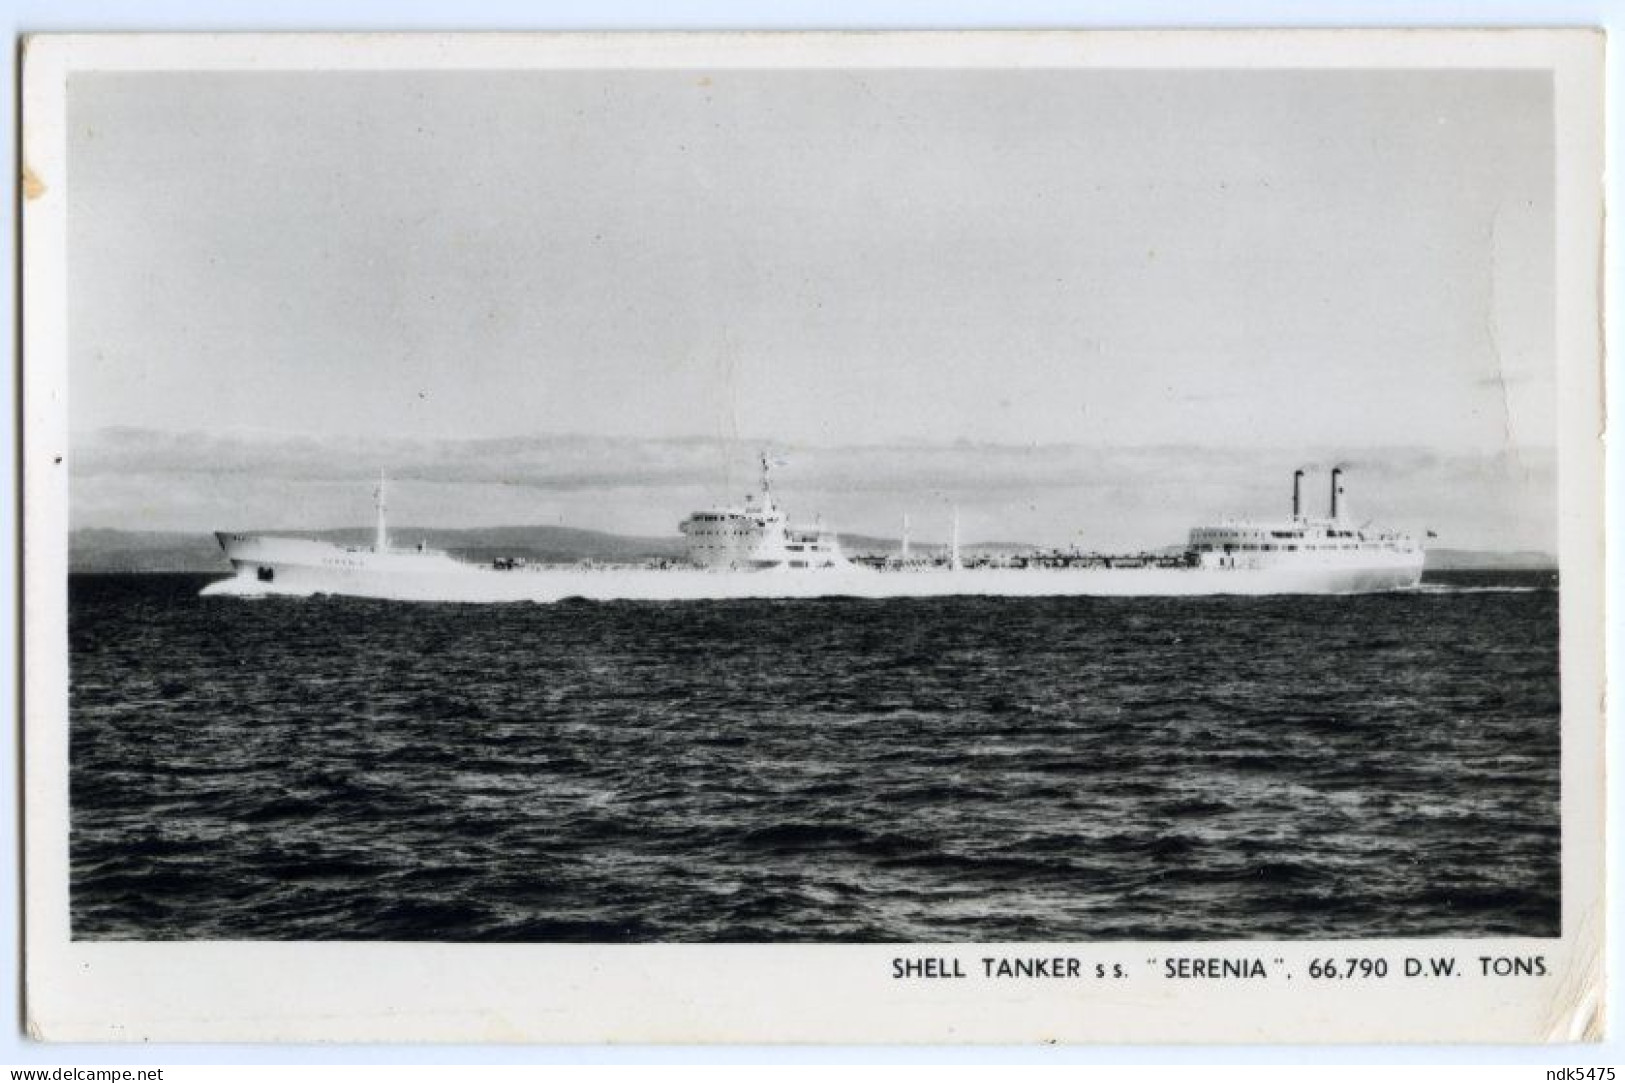 SHELL TANKER S. S. SERENIA - Tanker